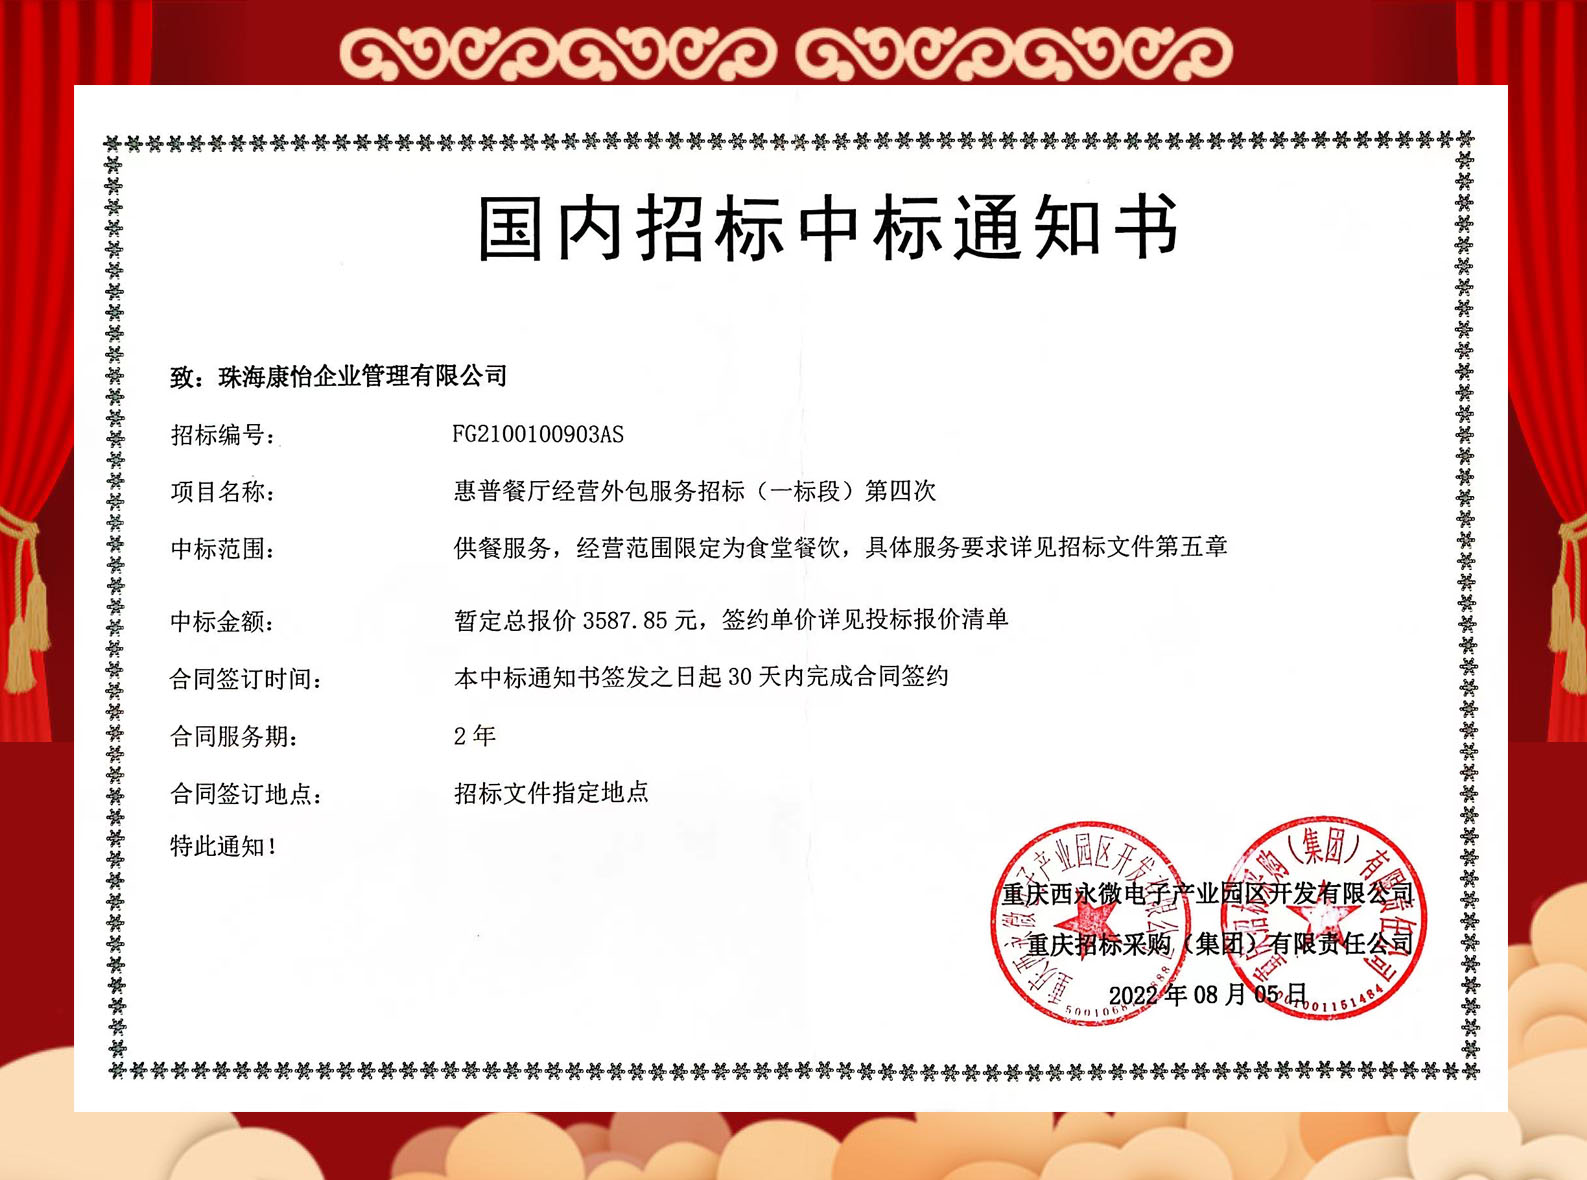 祝贺珠海康怡公司中标重庆西永微电子产业园惠普餐厅